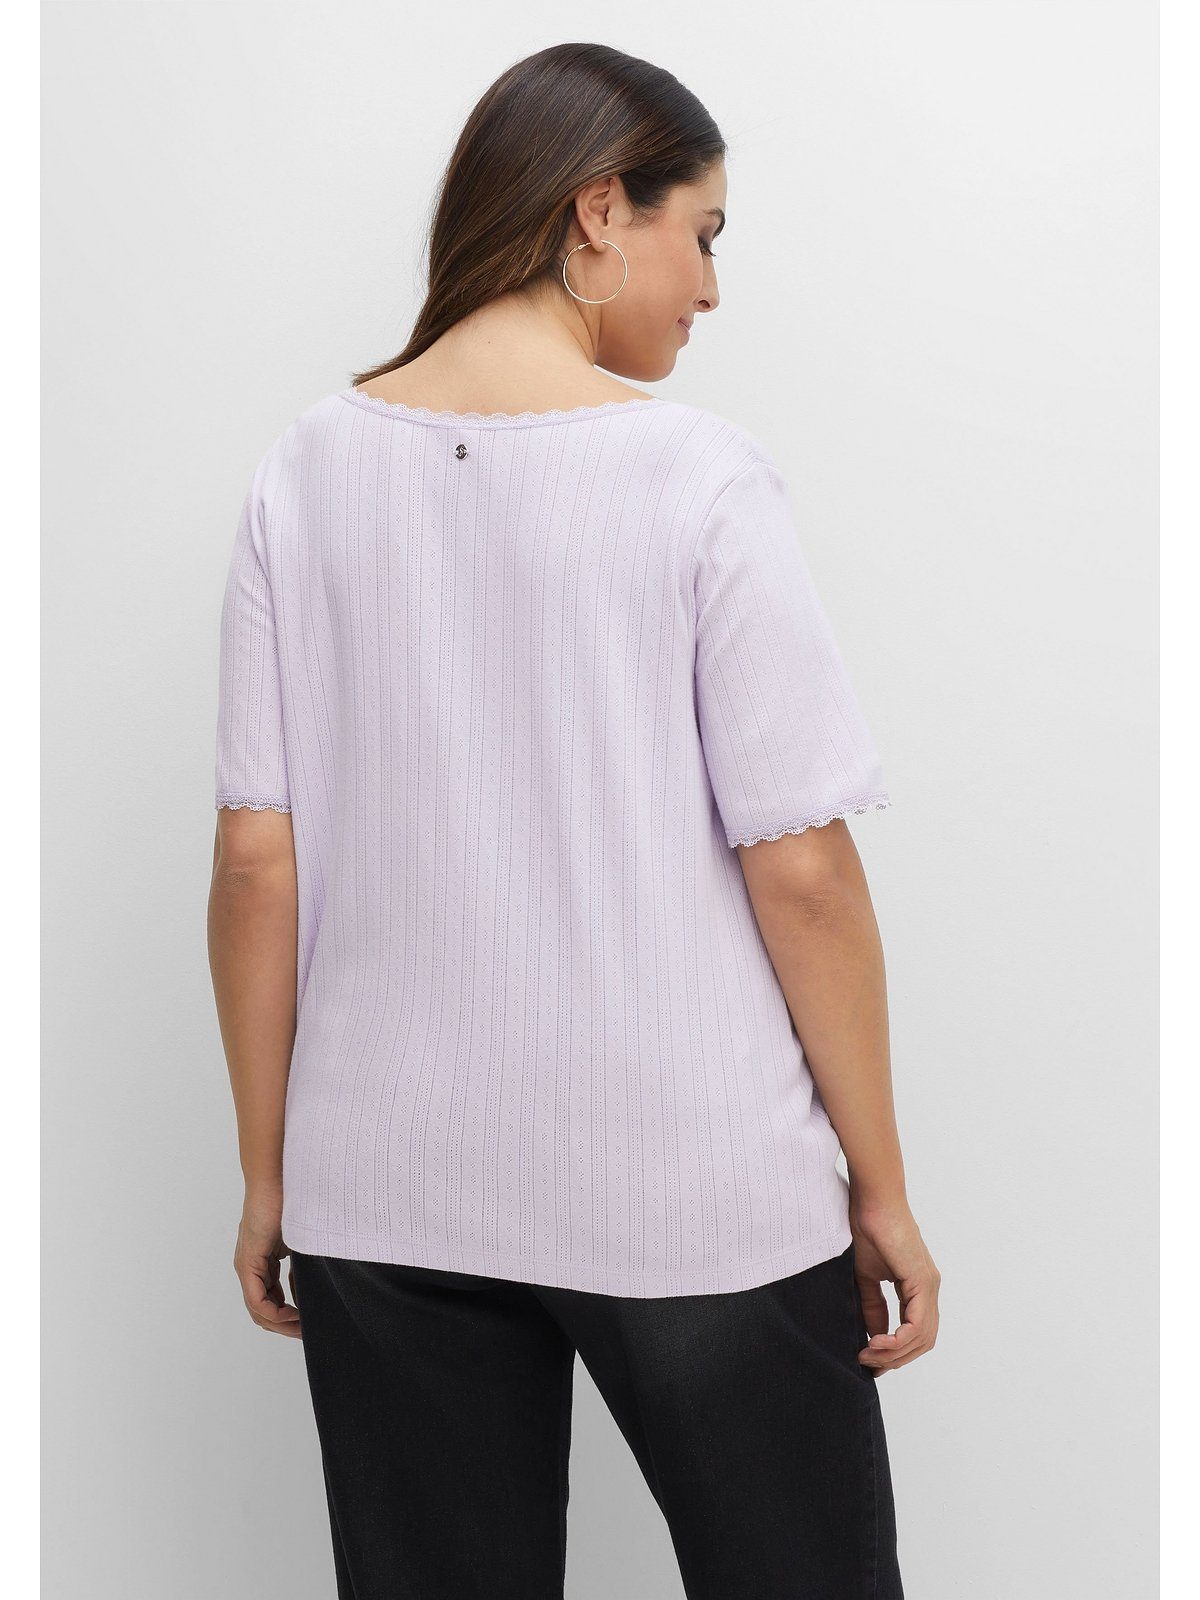 Sheego T-Shirt Große mit lavendel Größen und Spitze Lochmuster